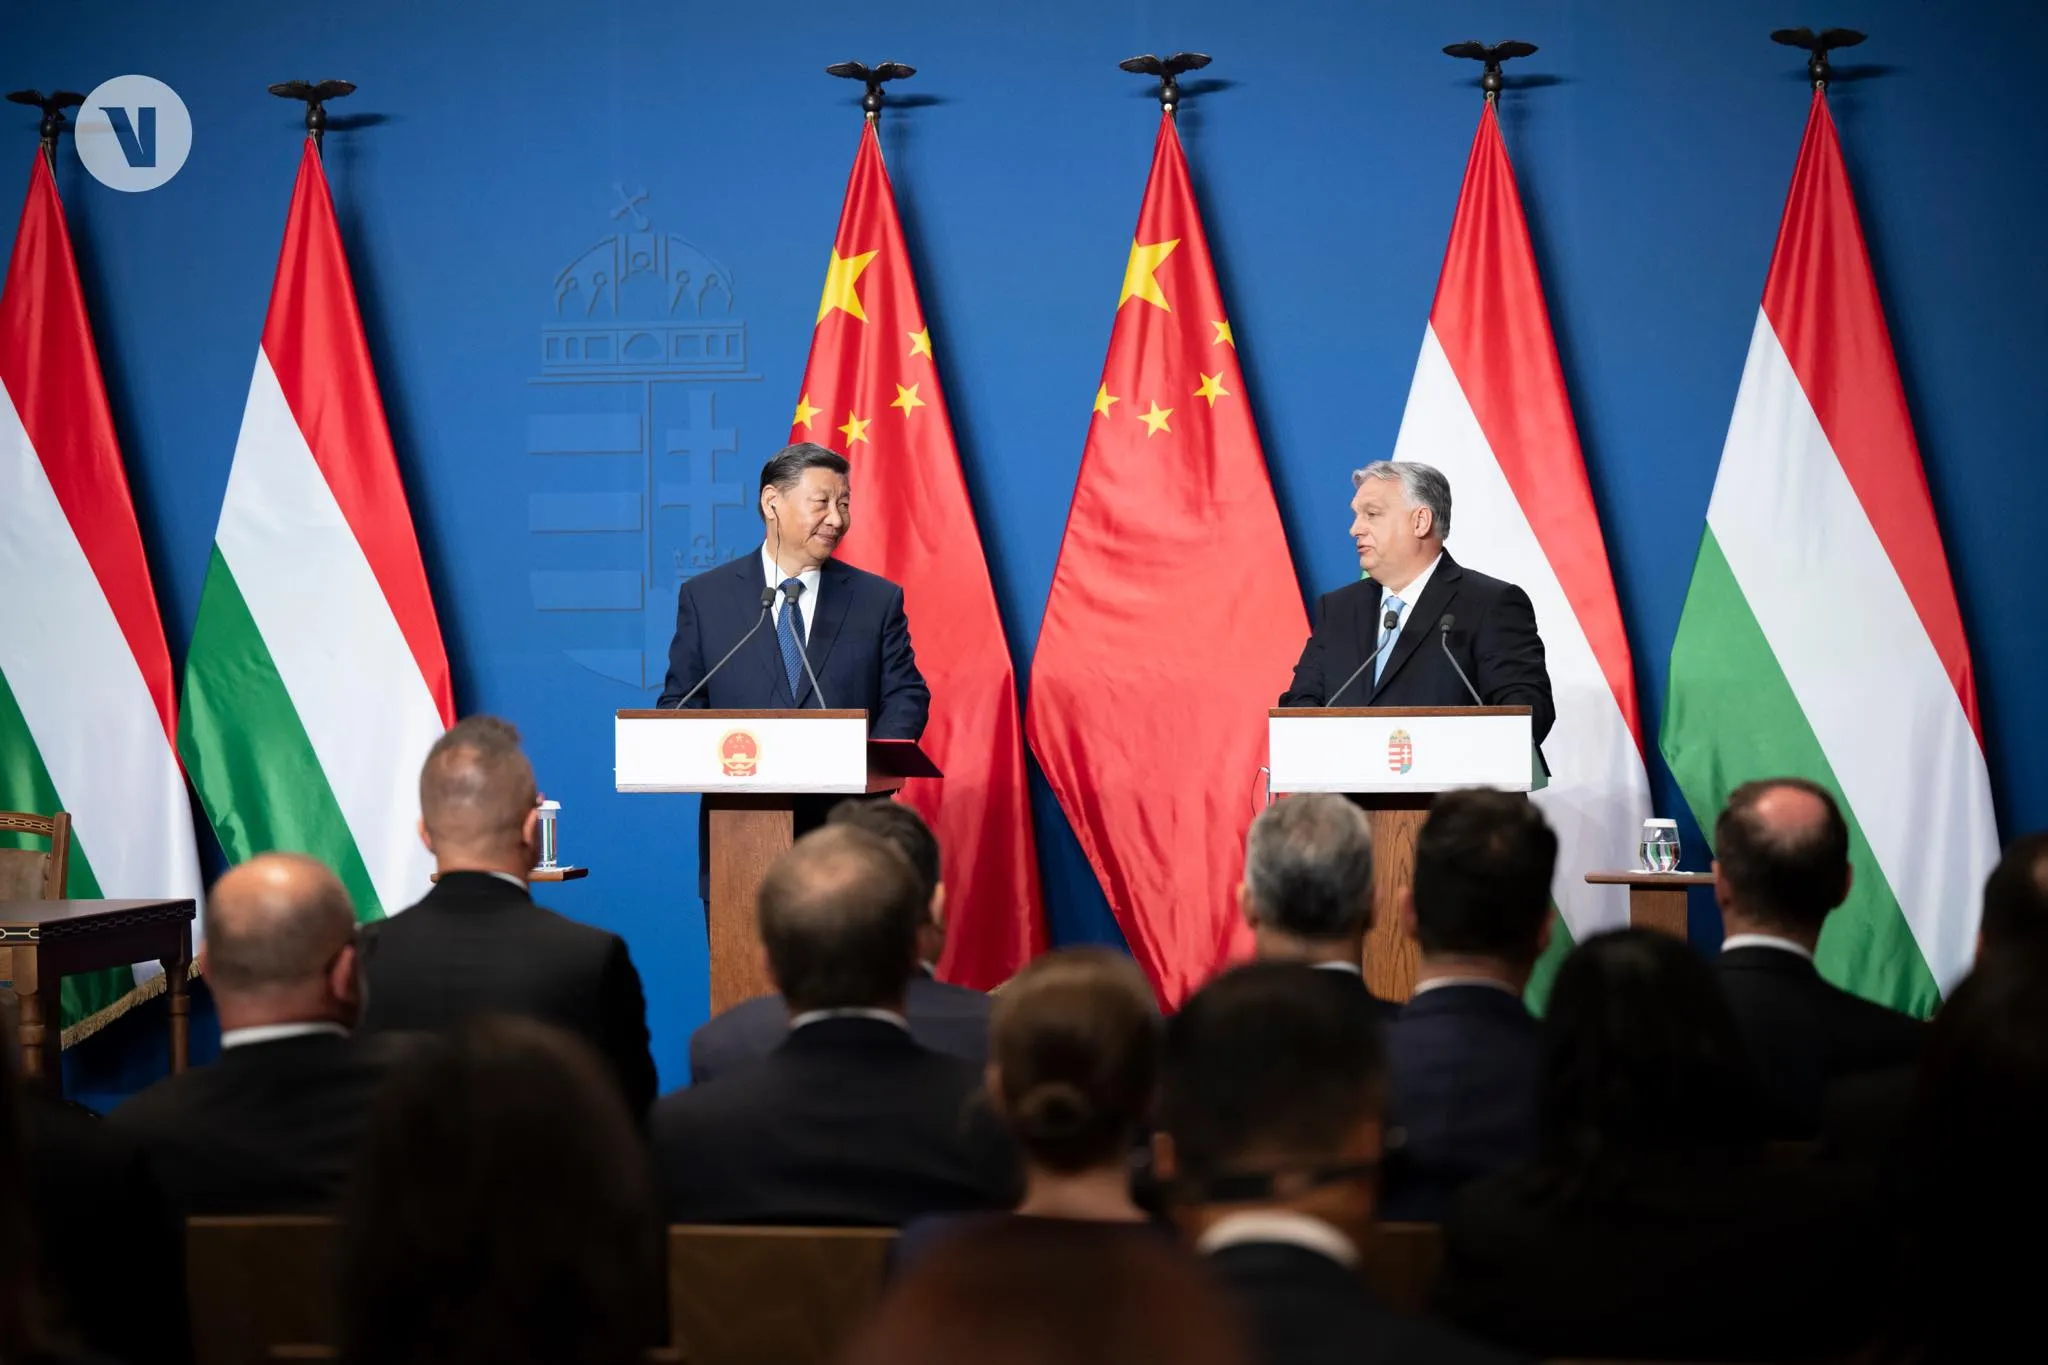 Венгрию включили "в круг друзей" Китая после визита Си Цзиньпина к Орбану